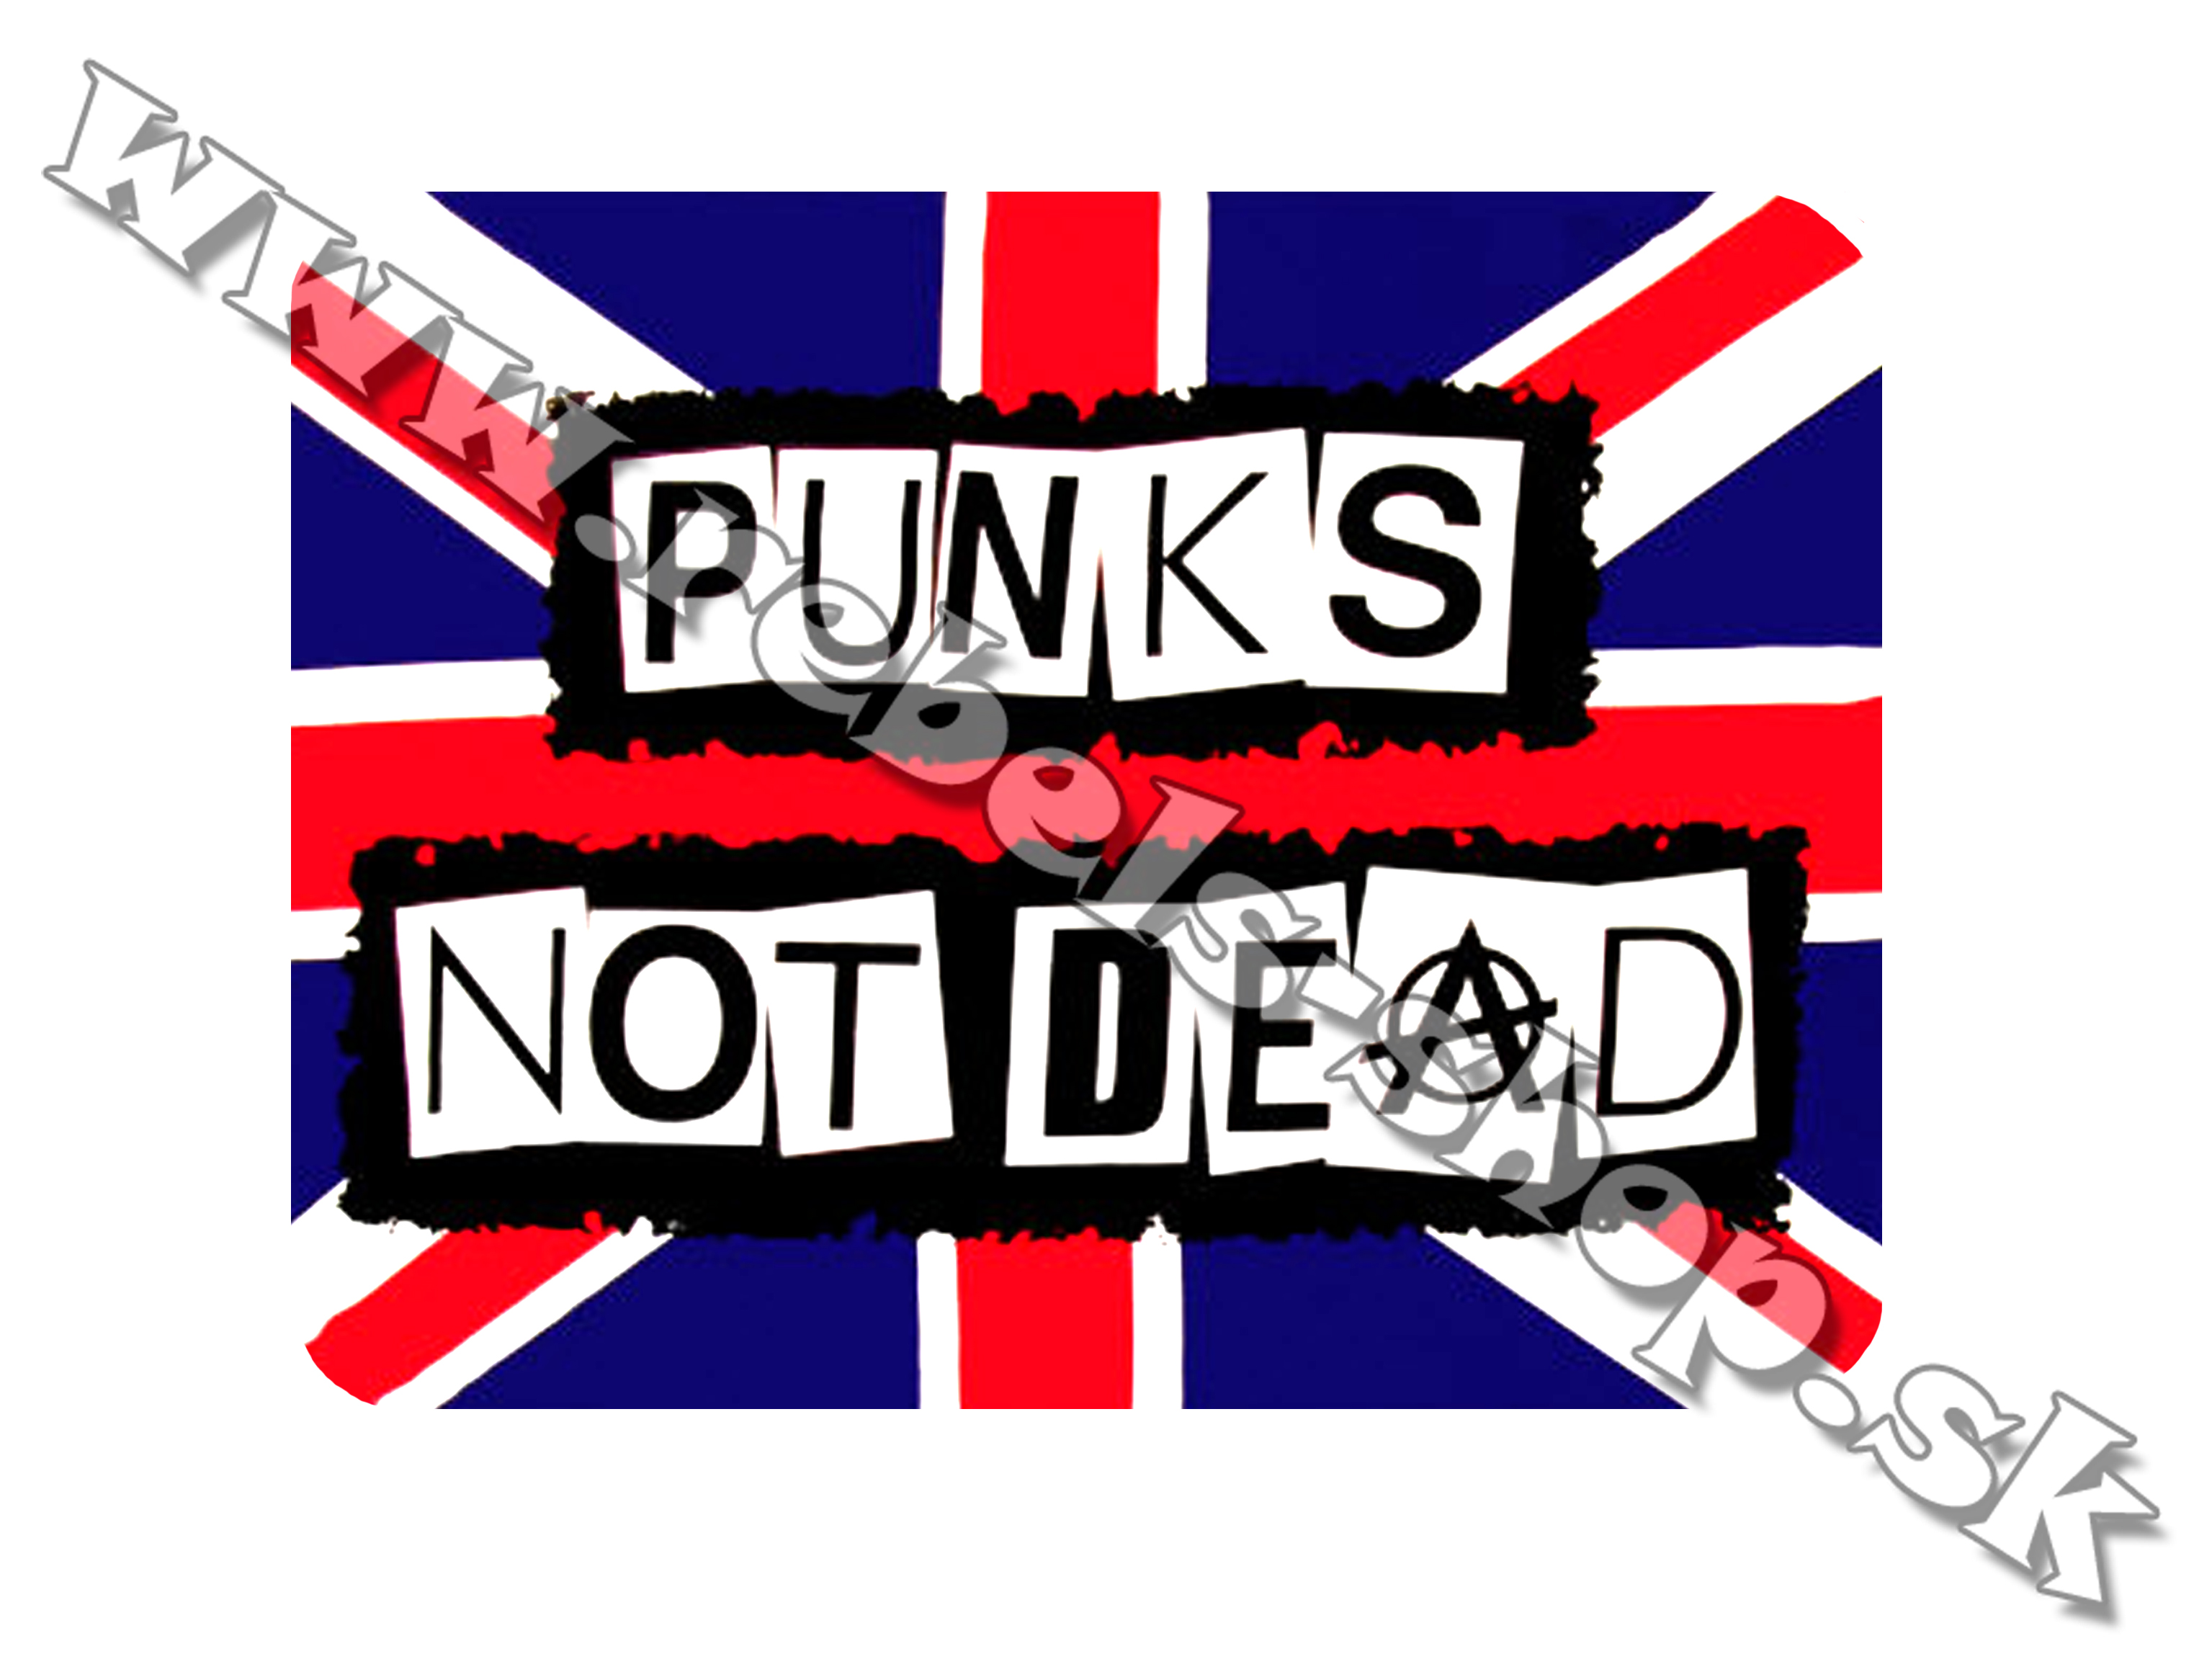 Podložka pod myš  "Punks Not Dead"